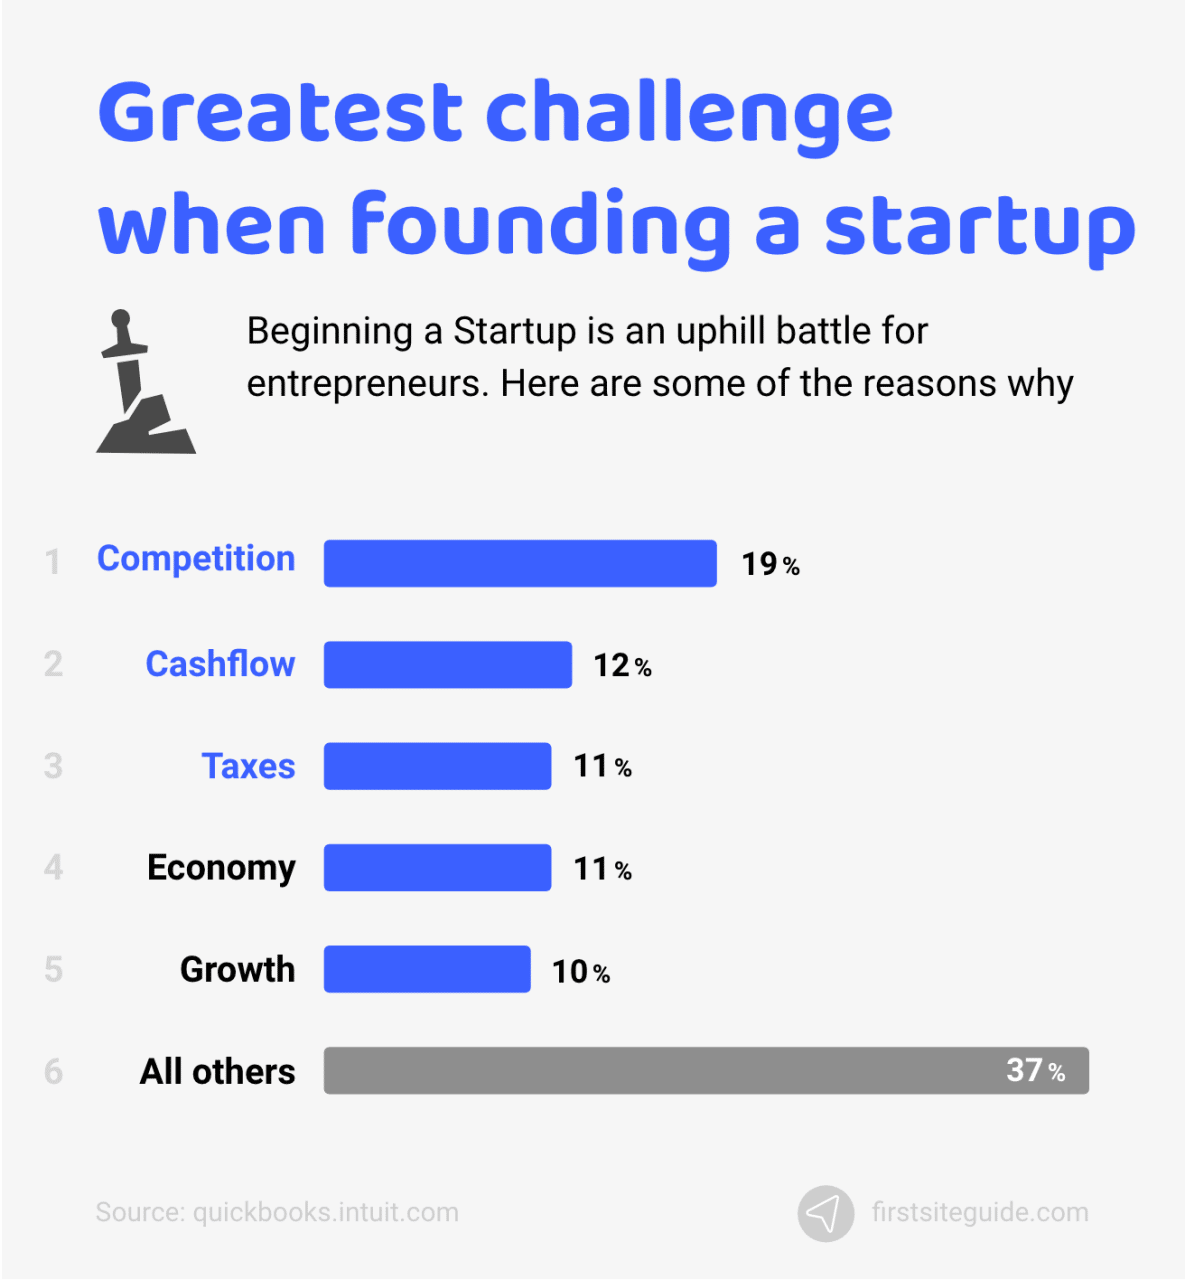 El mayor reto al fundar una startup